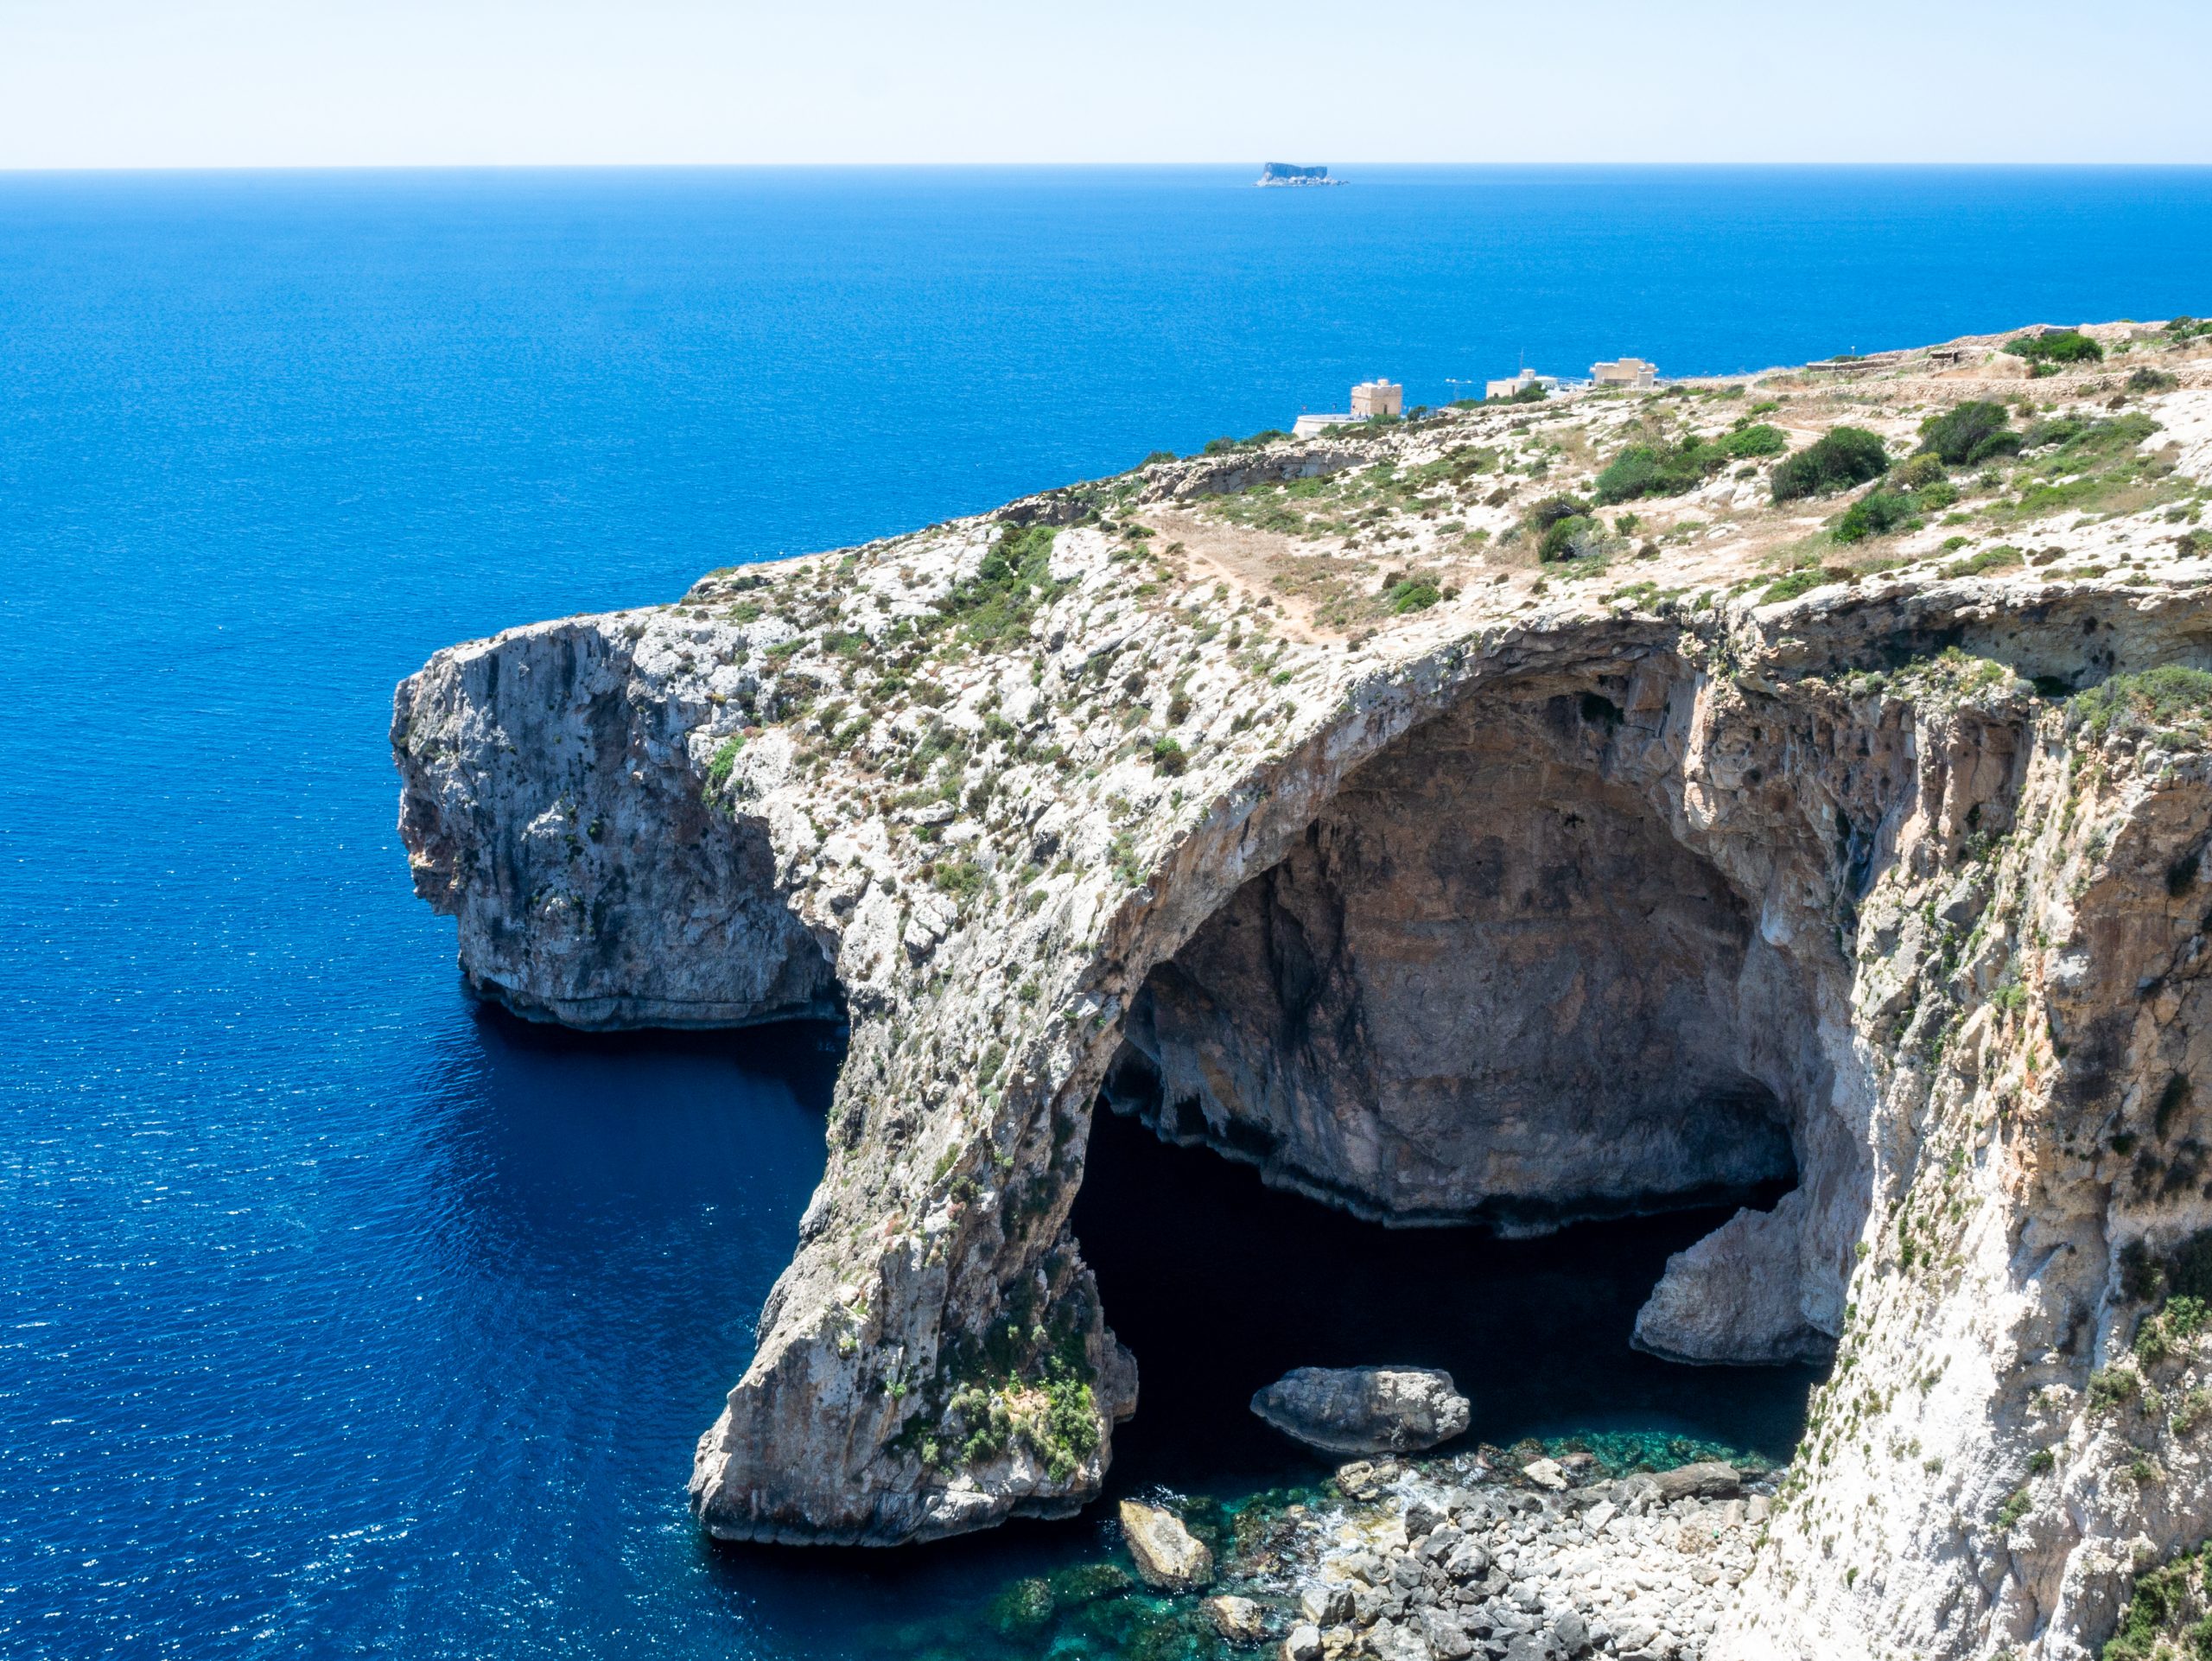 Malta’s Blue Arch